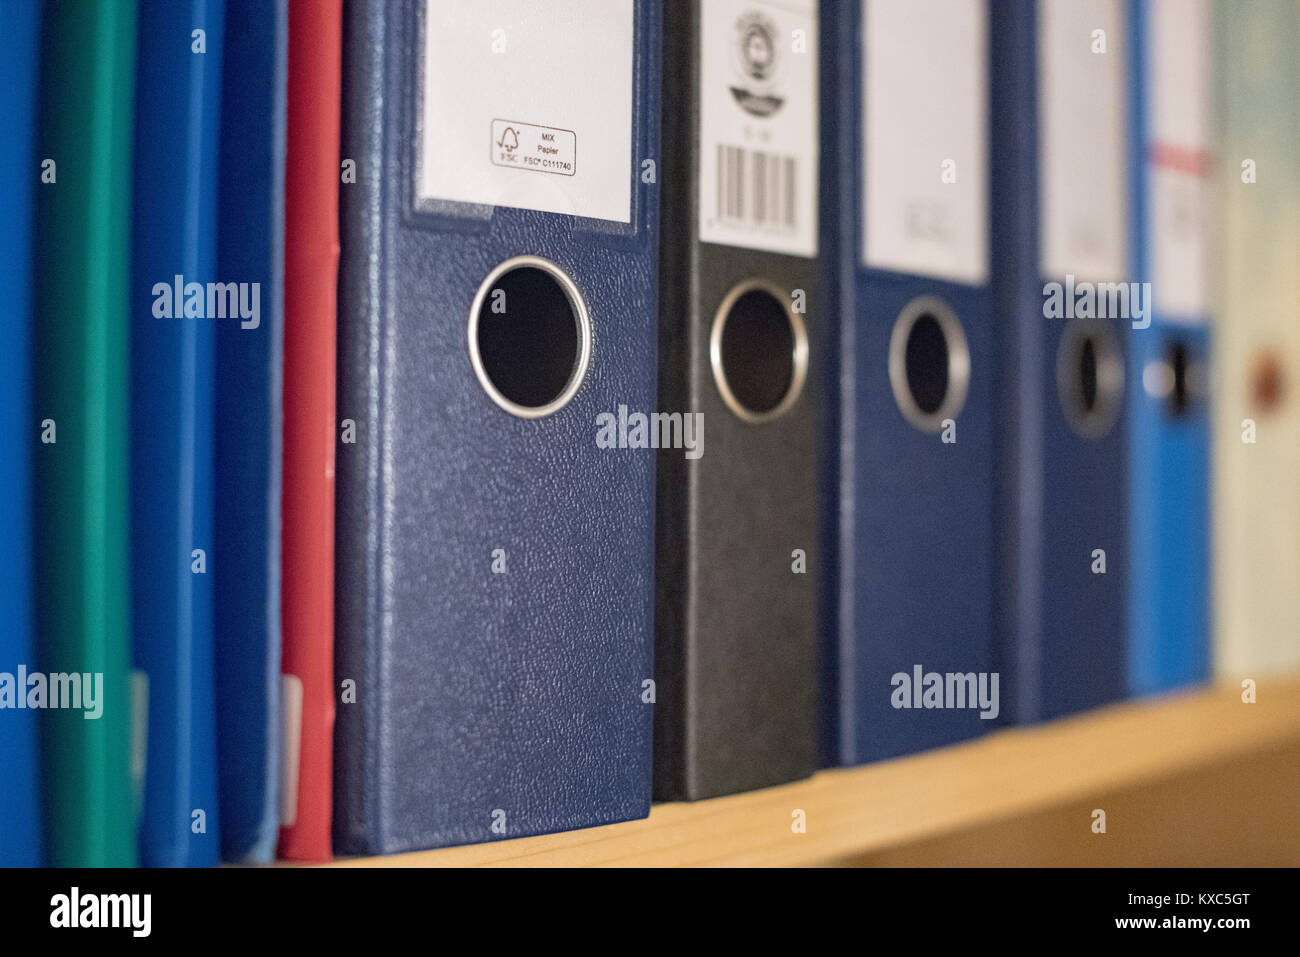 Une rangée de dossiers et fichiers de différents passage de la taille, du type et de la couleur sur une étagère Banque D'Images